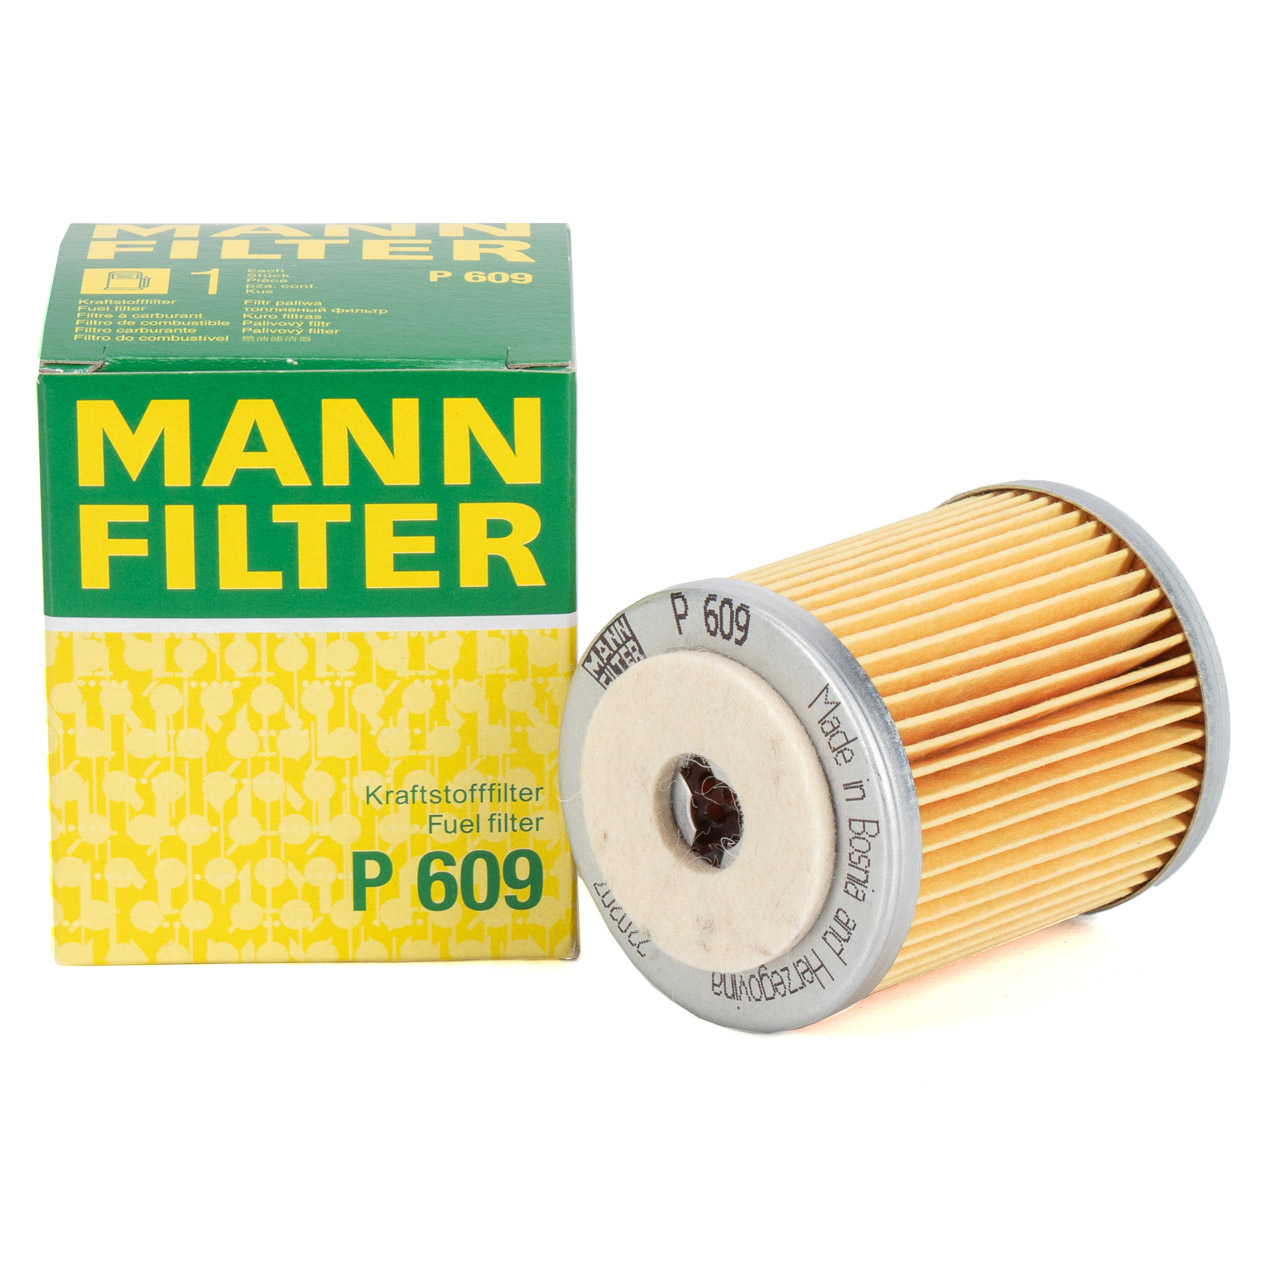 MANN P609 Kraftstofffilter Filter VOLVO 240 740 744 745 760 940 944 945 2.4D